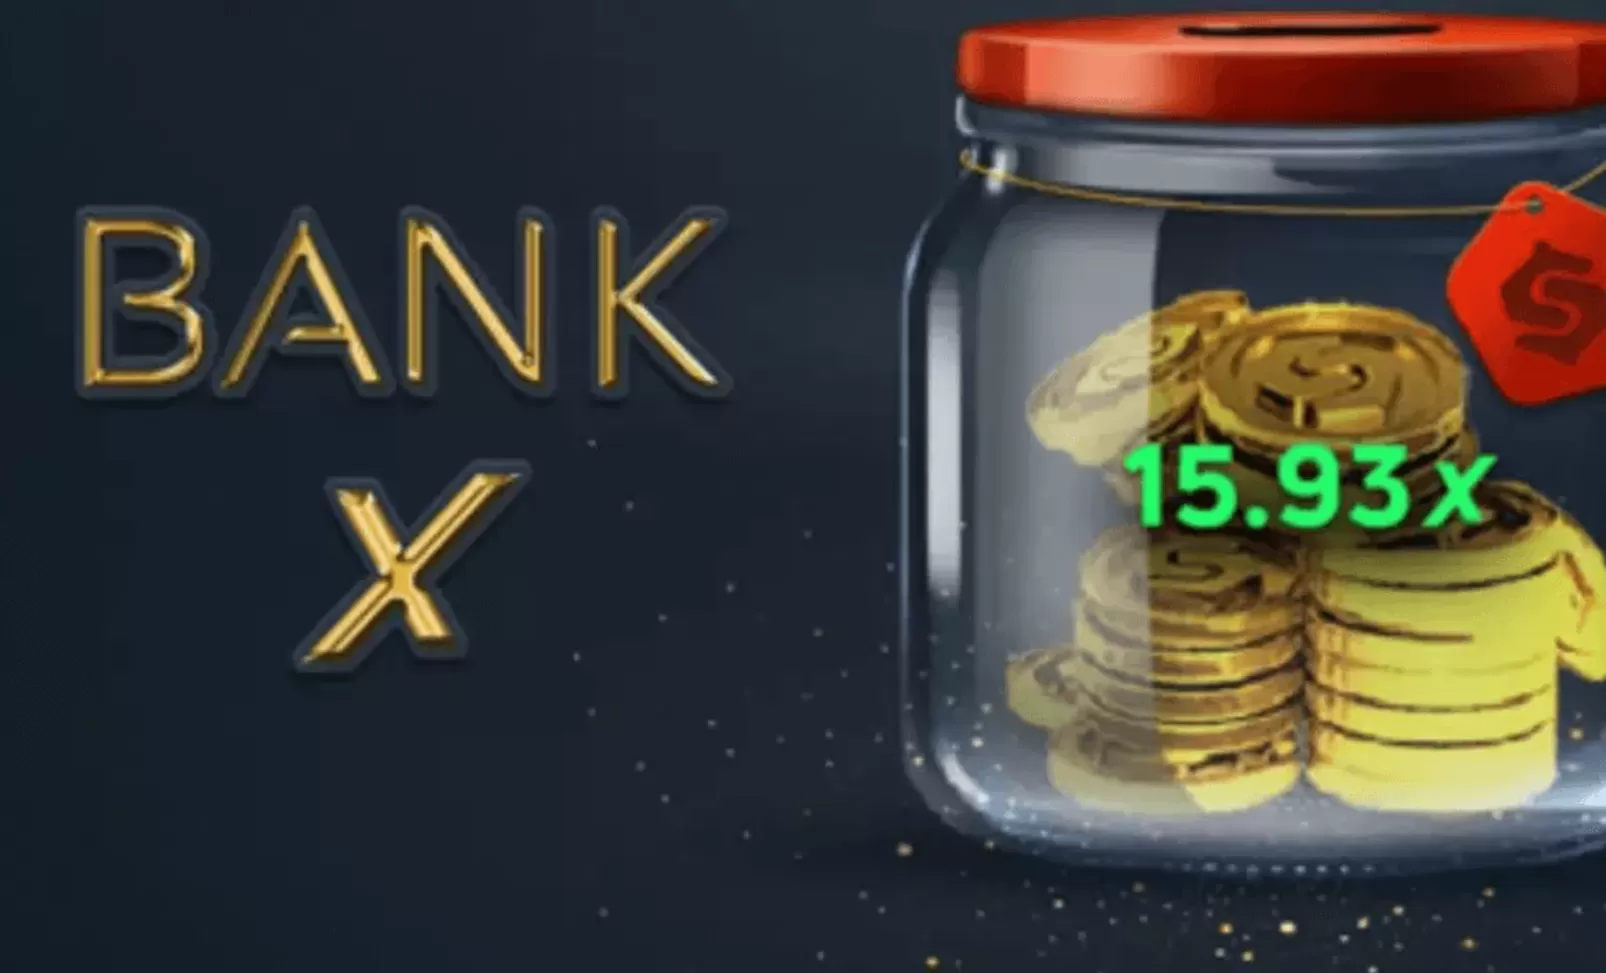 Bank X